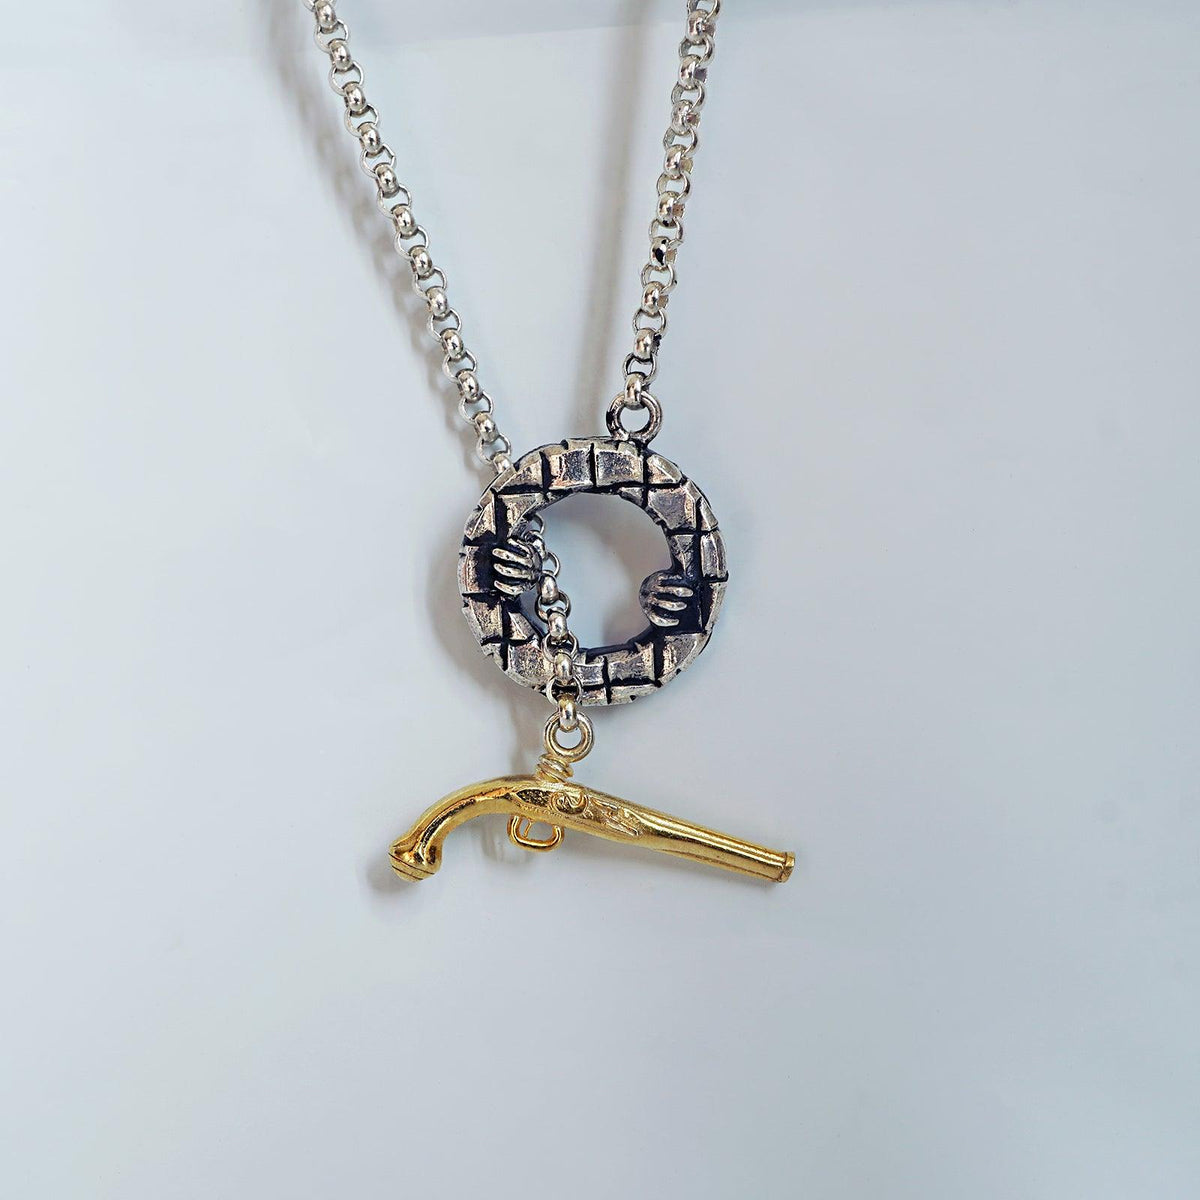 Hand Gun Chain Necklace - Tippy Taste Jewelry